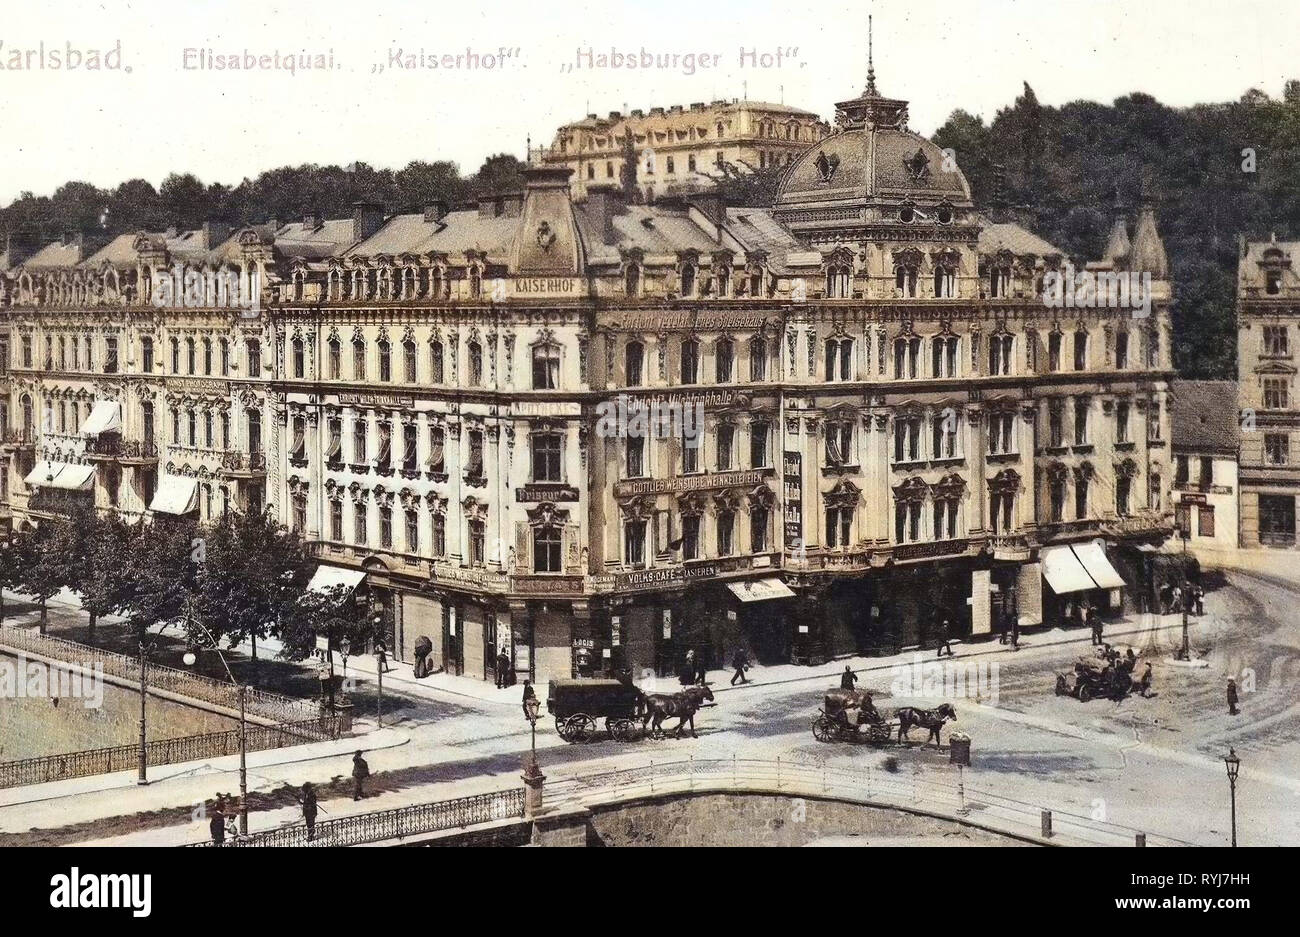 Gebäude in Karlovy Vary, Brücken über den Teplá, 1909 in Karlsbad, Karlsbad, Karlsbad, Elisabetquai, Kaiserhof, Habsburger Hof, Tschechische Republik Stockfoto